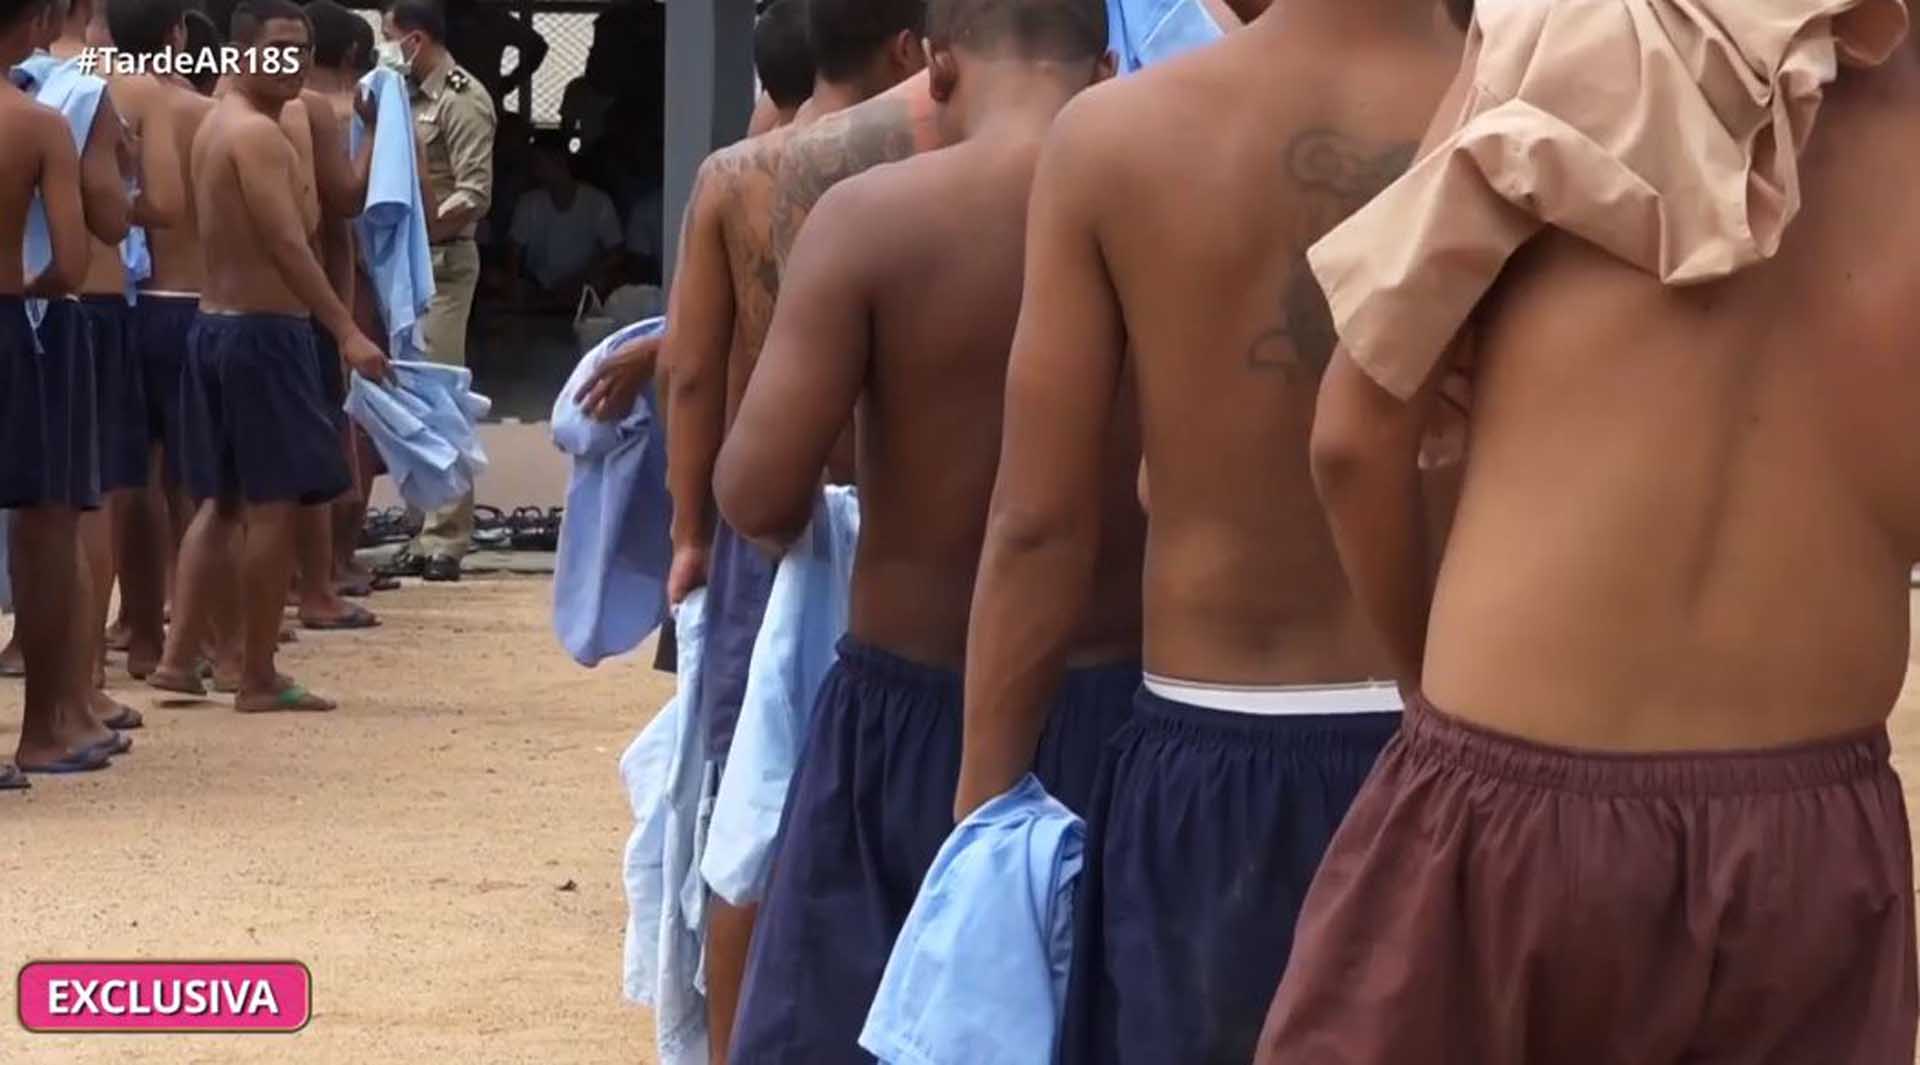 Presos tailandeses llevan uniforme azul si son condenados y marrón si todavía están en prisión preventiva. En la fotografía aparecen muchos de ellos sin camiseta